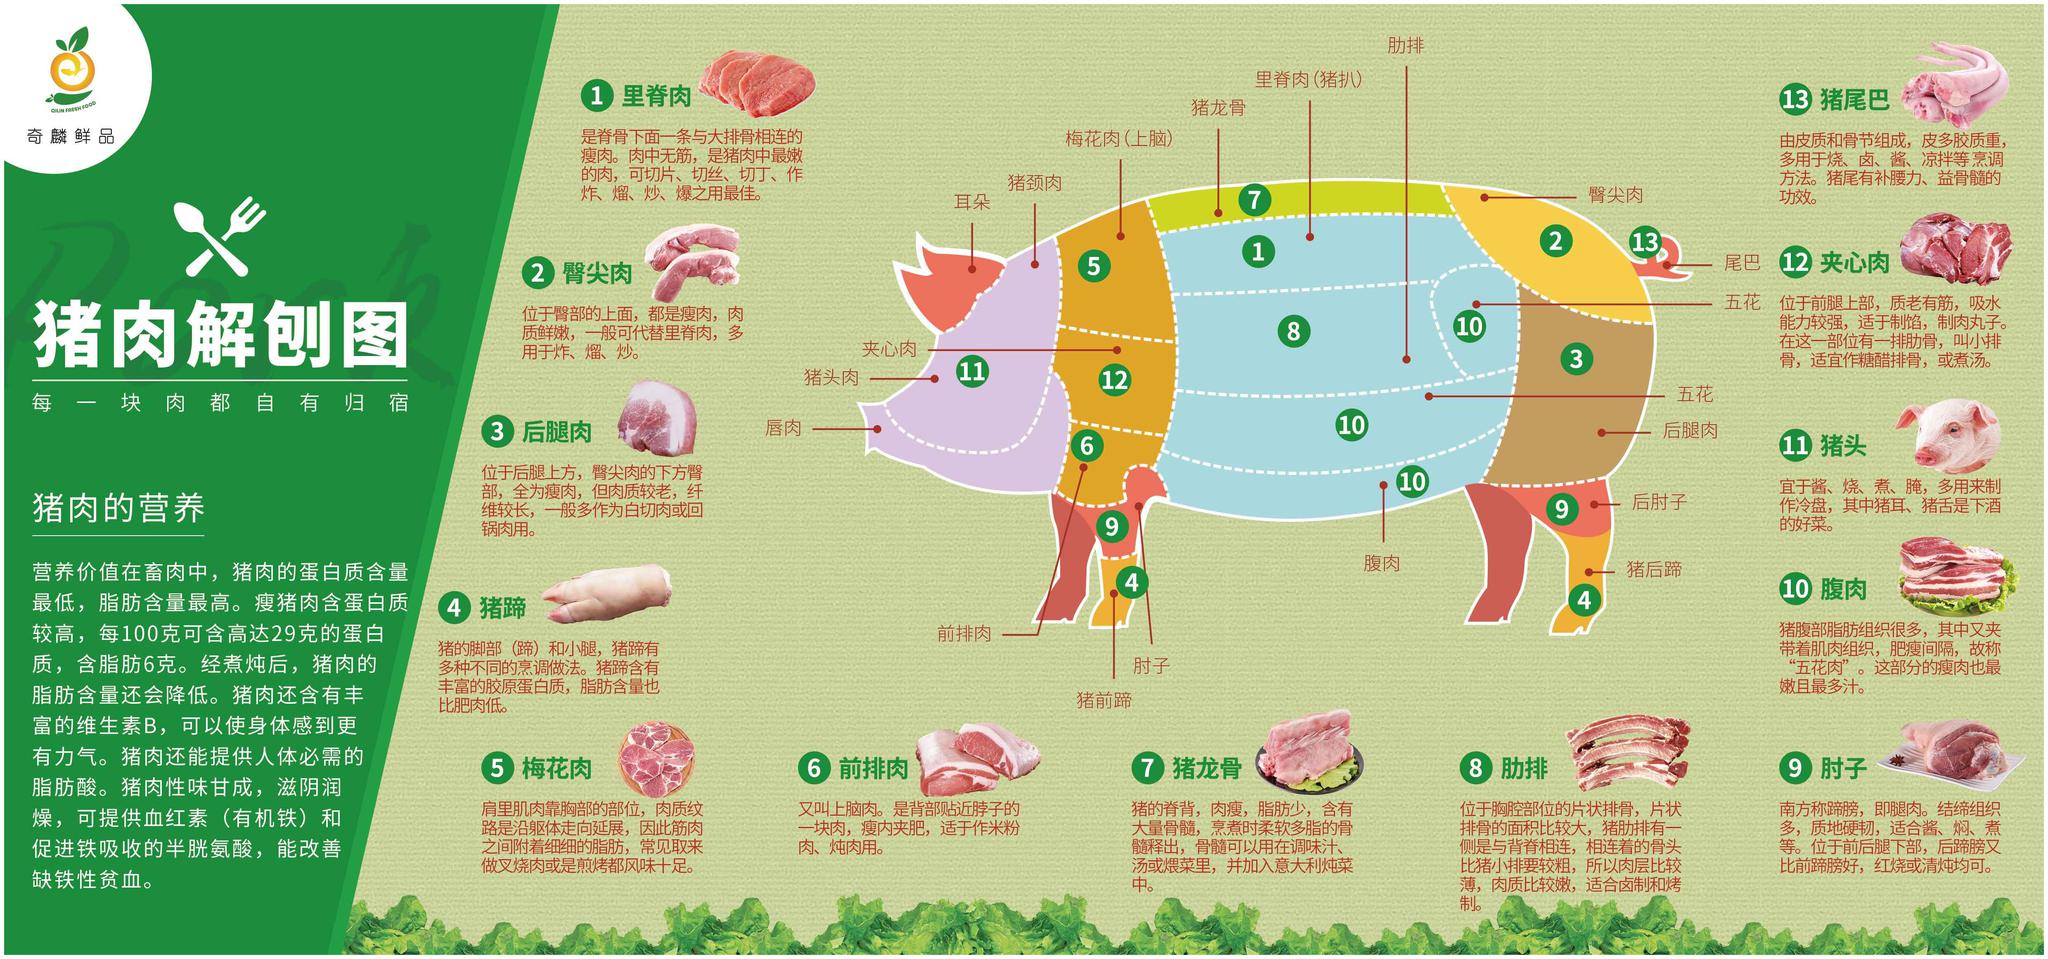 猪肉各部位图解图片